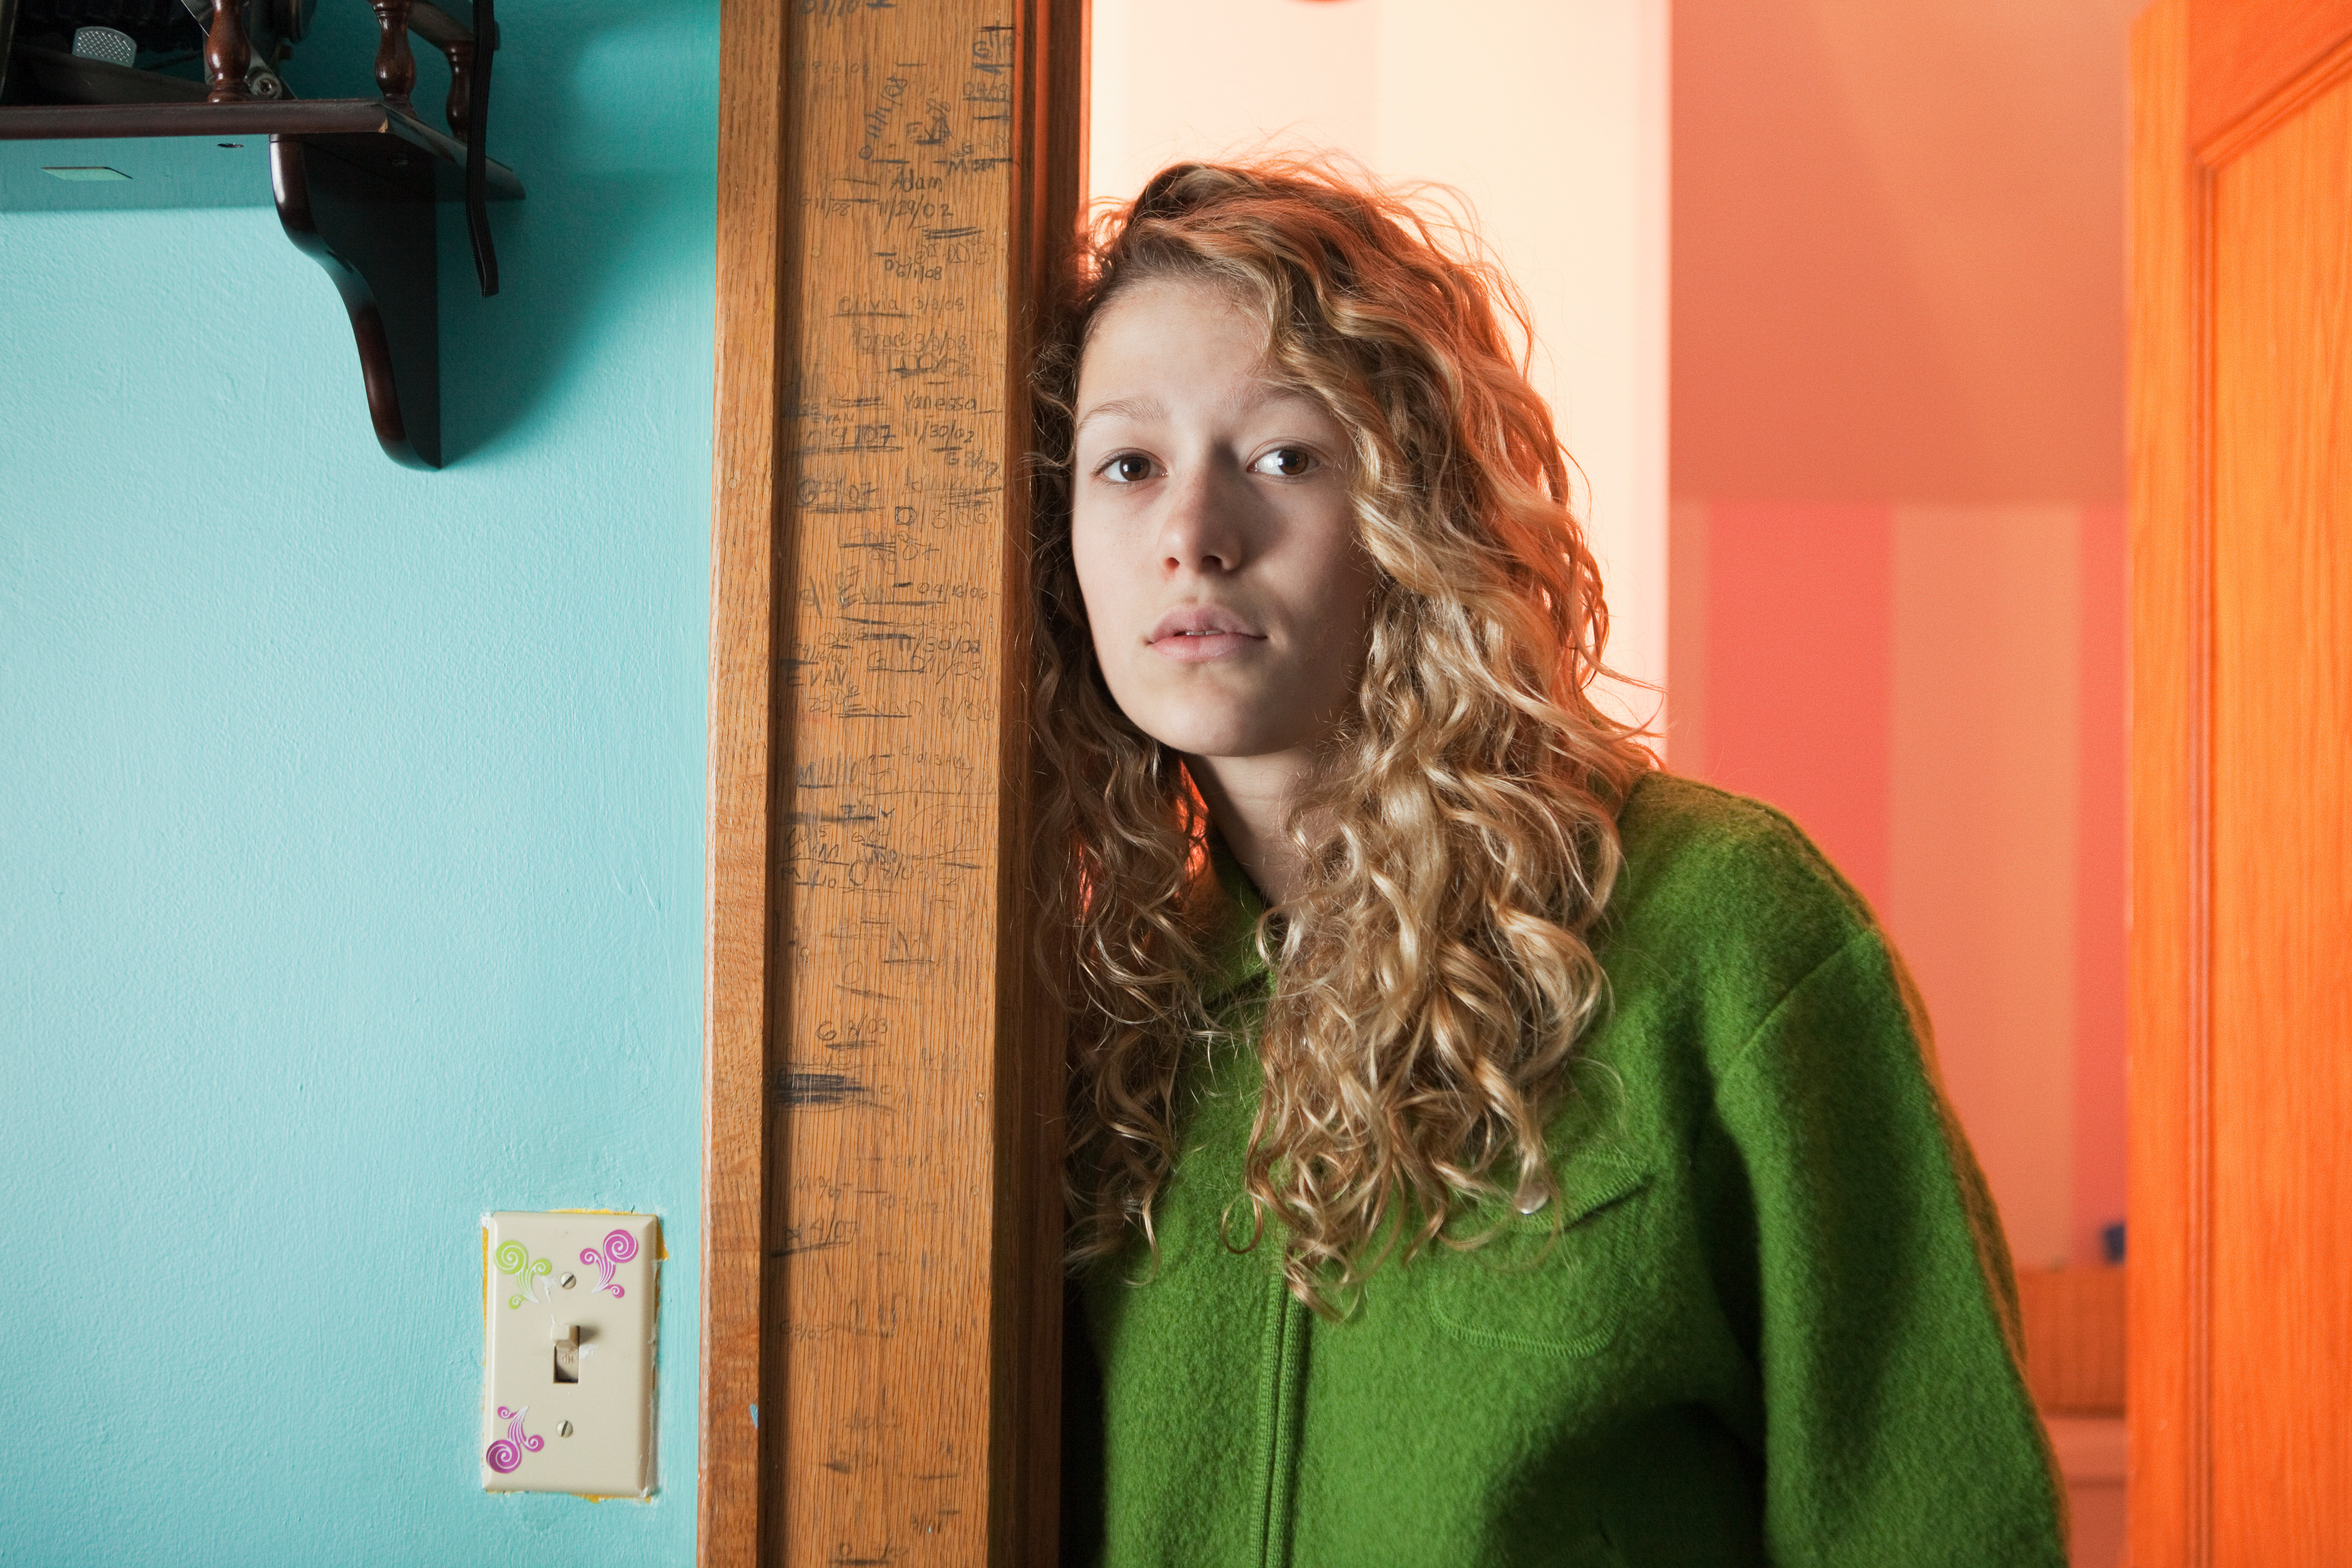 Une adolescente penchée dans l'embrasure d'une porte, portrait | Source : Getty Images